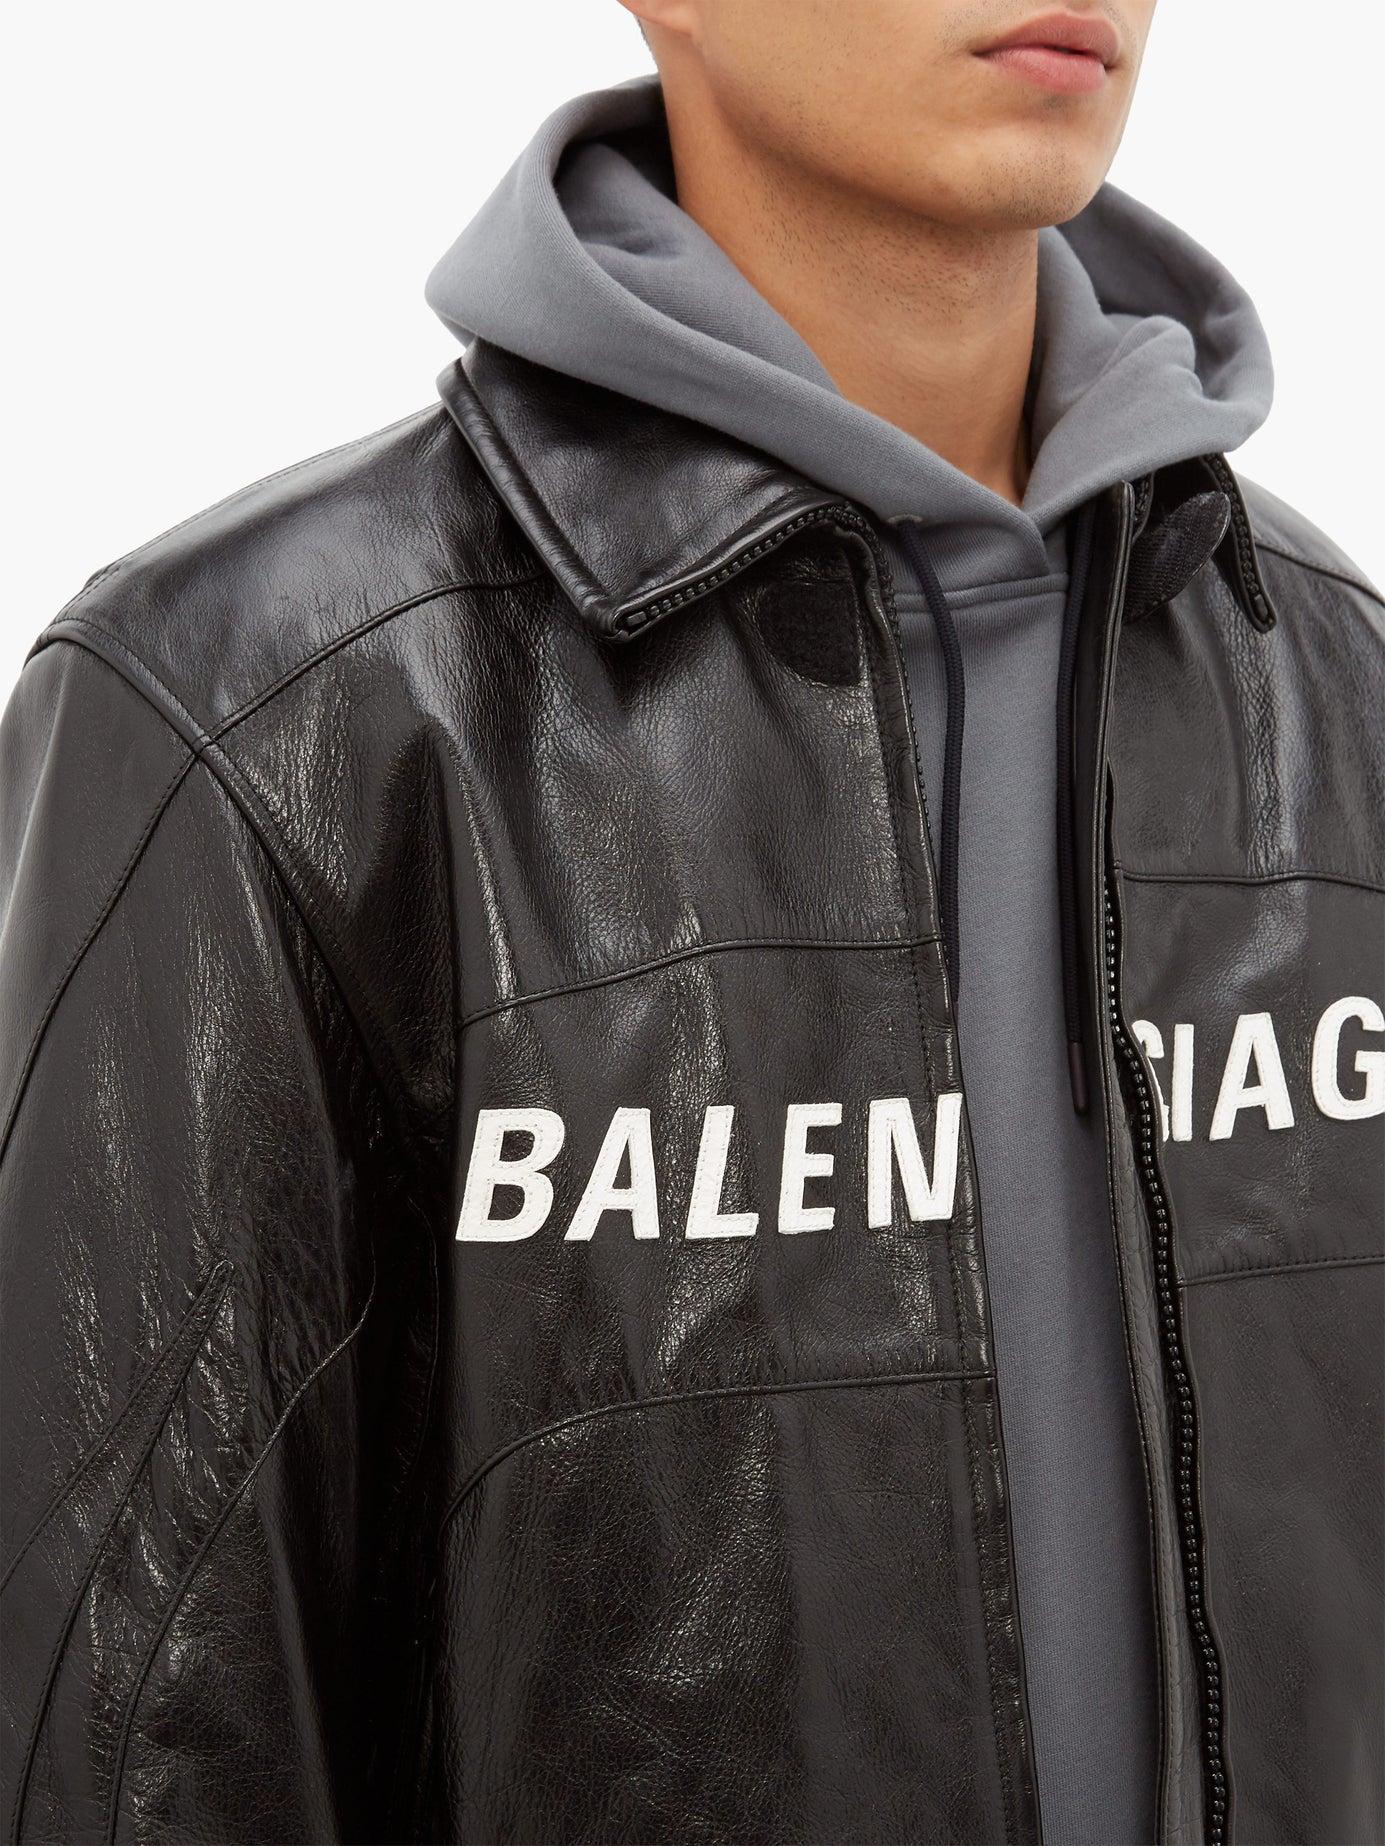 Chia sẻ hơn 52 về balenciaga motorcycle jacket mới nhất - cdgdbentre.edu.vn